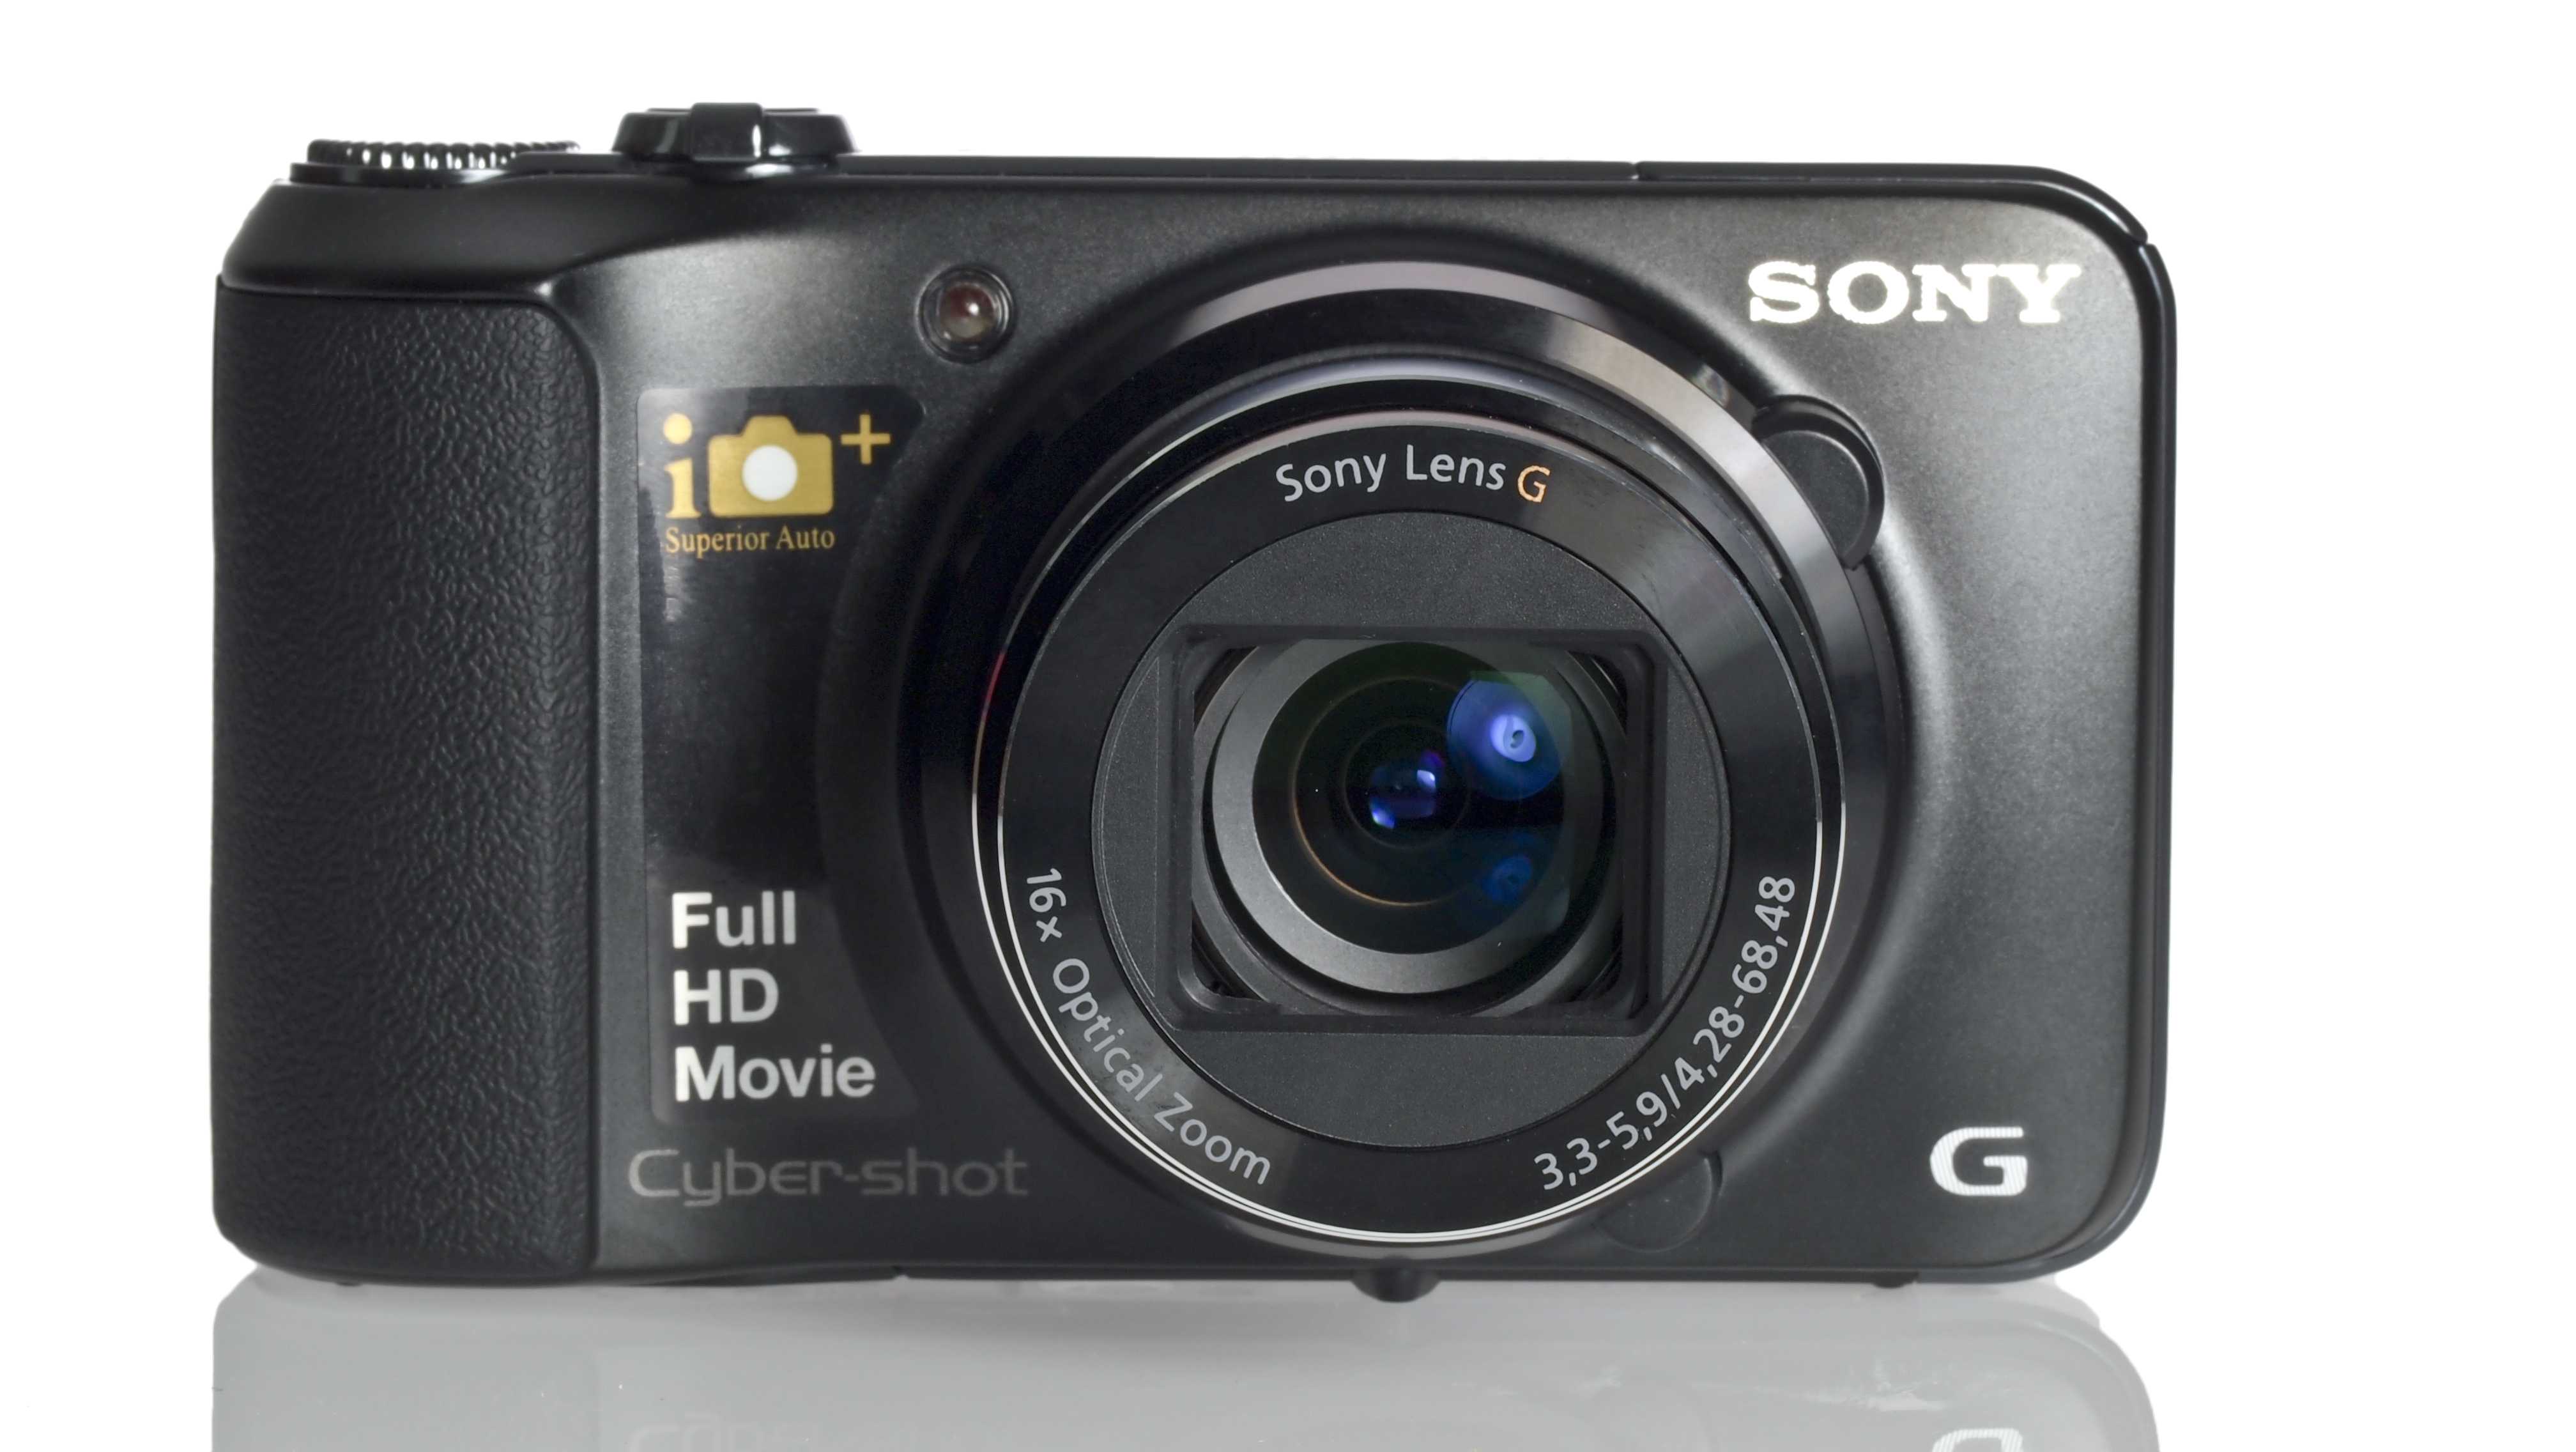 Цифровой фотоаппарат Sony DSC-HX10 - подробные характеристики обзоры видео фото Цены в интернет-магазинах где можно купить цифровую фотоаппарат Sony DSC-HX10